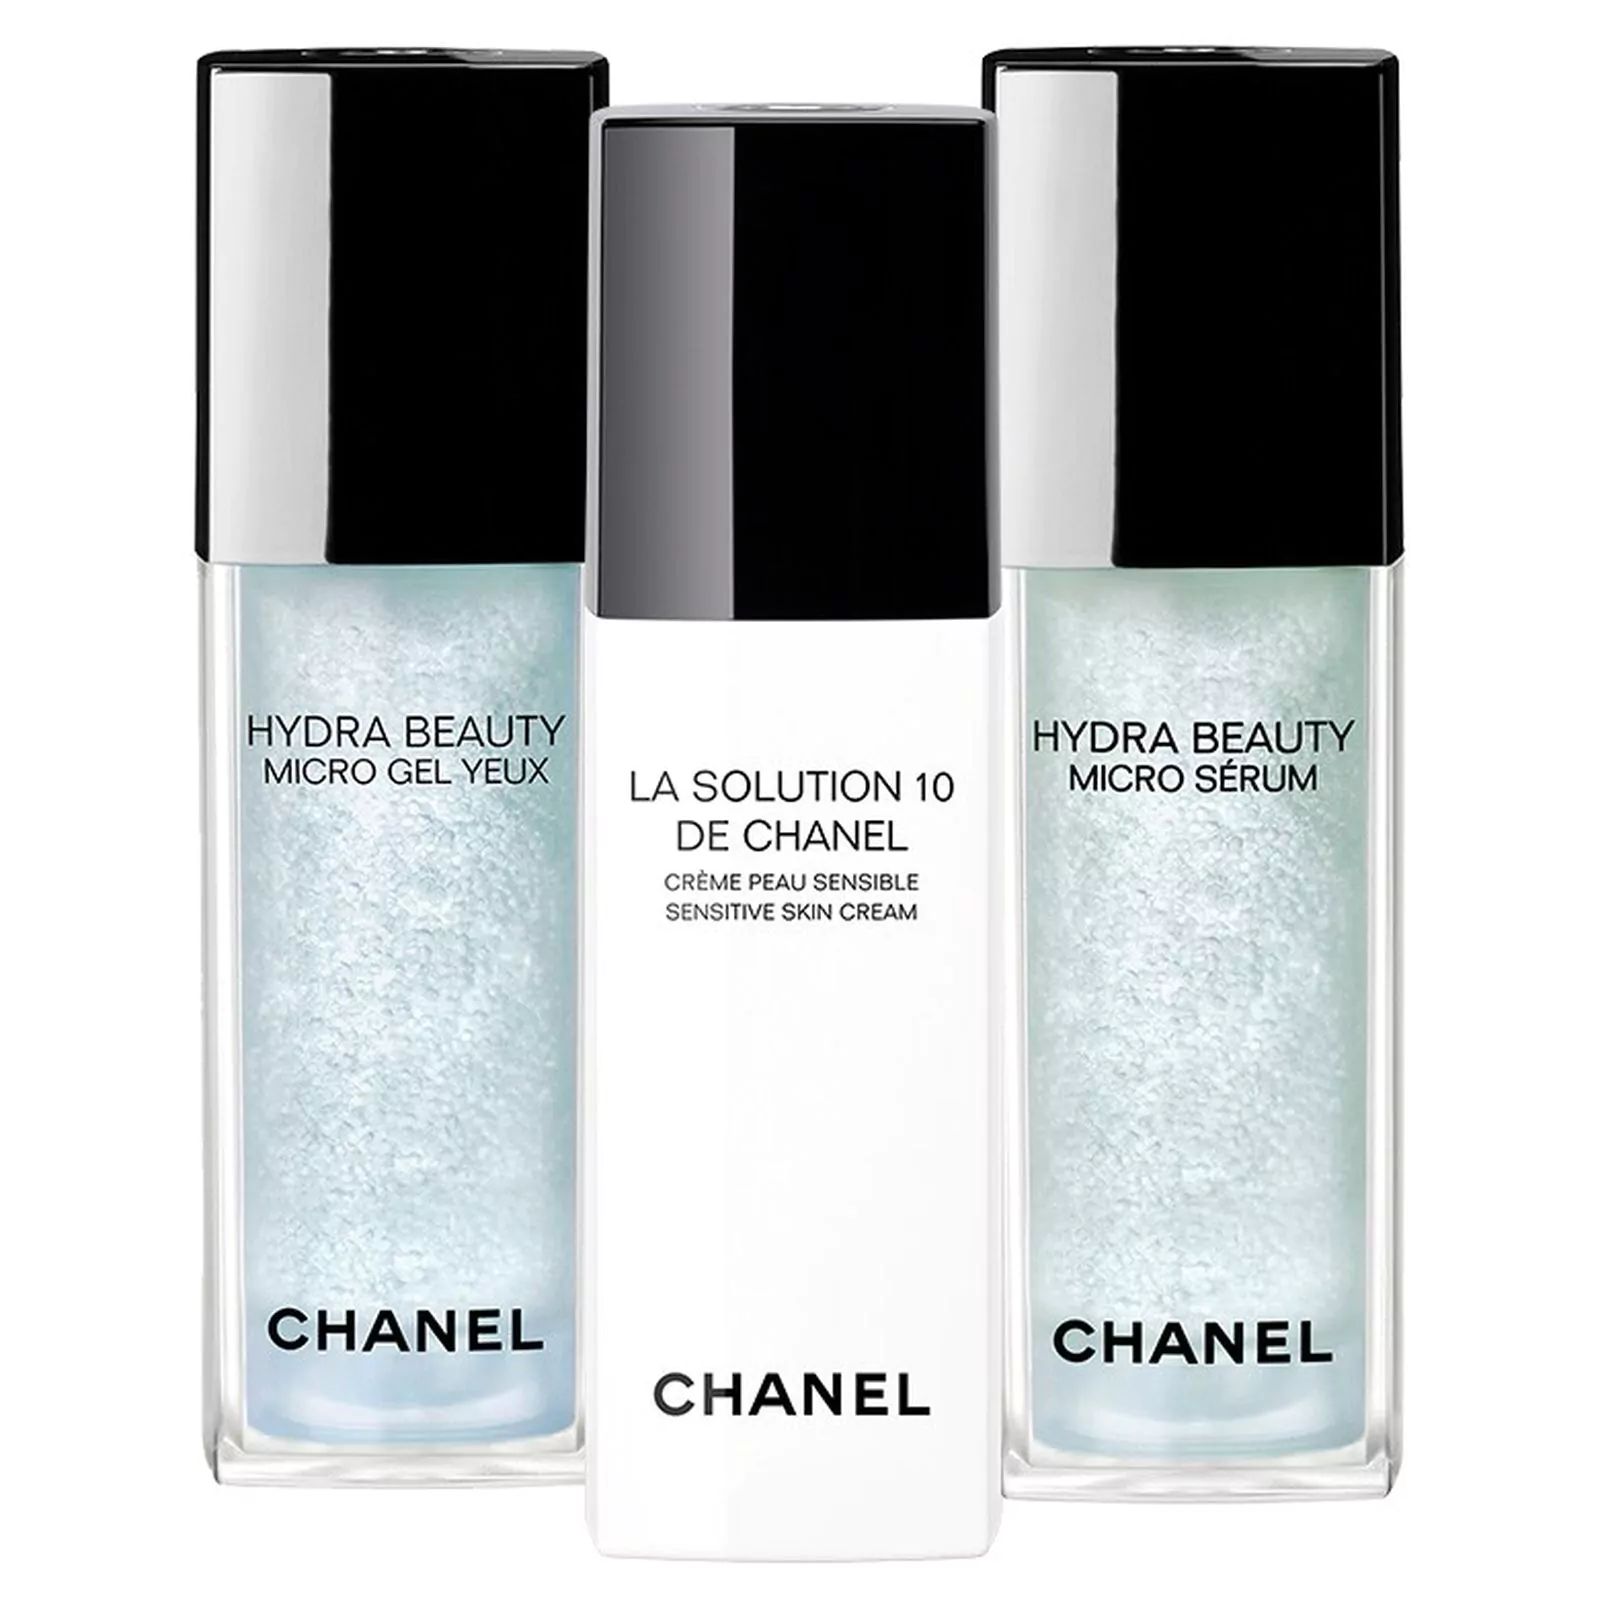 Chanel Hydra Beauty Micro Gel Yeux, La Solution 10 de Chanel, Hydra Beauty Micro Sérum